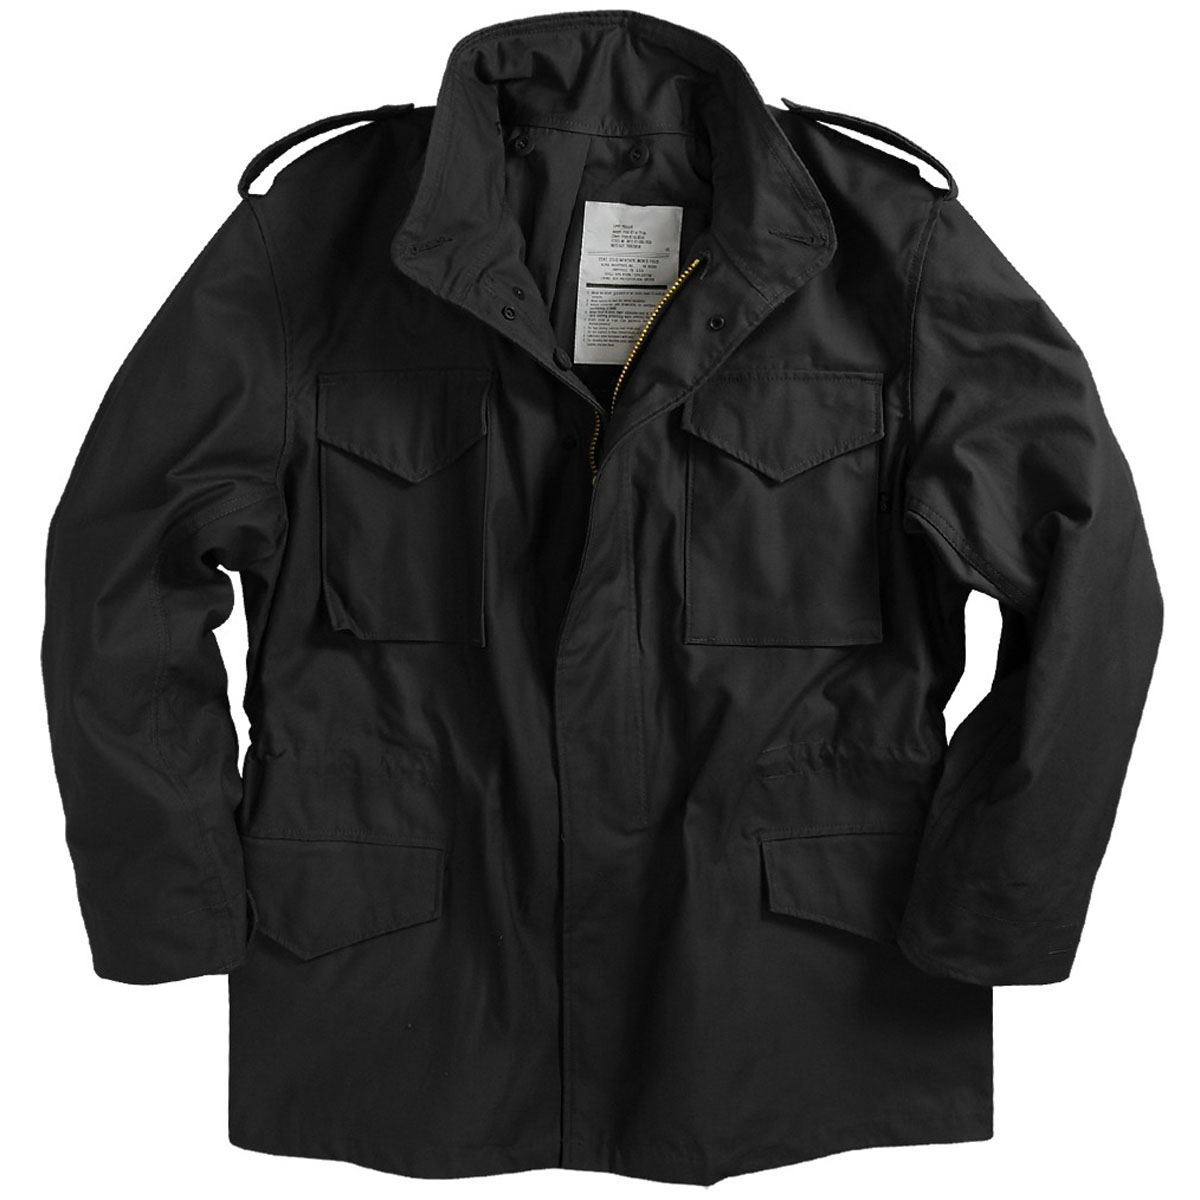 Как называется куртка с карманами наверху: Как называются длинные куртки до колена с капюшоном меховым и карманами на груди ( типо фанатские)?